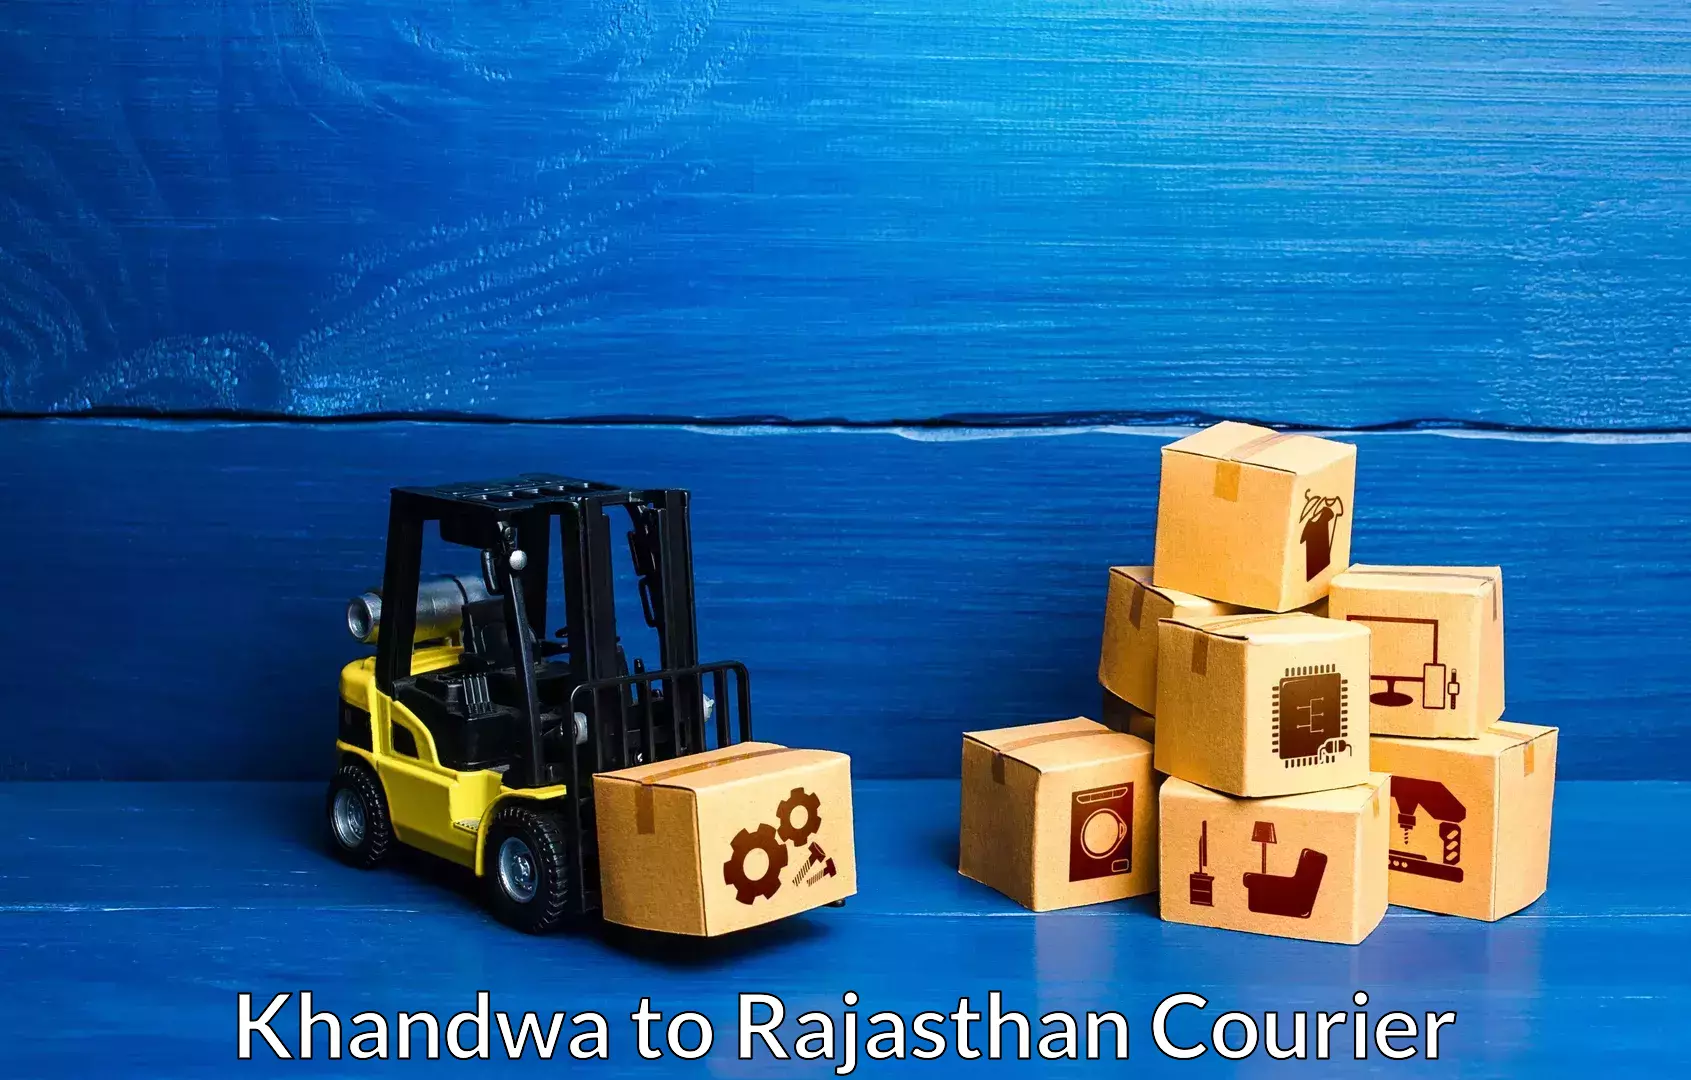 Professional moving assistance Khandwa to Mathania